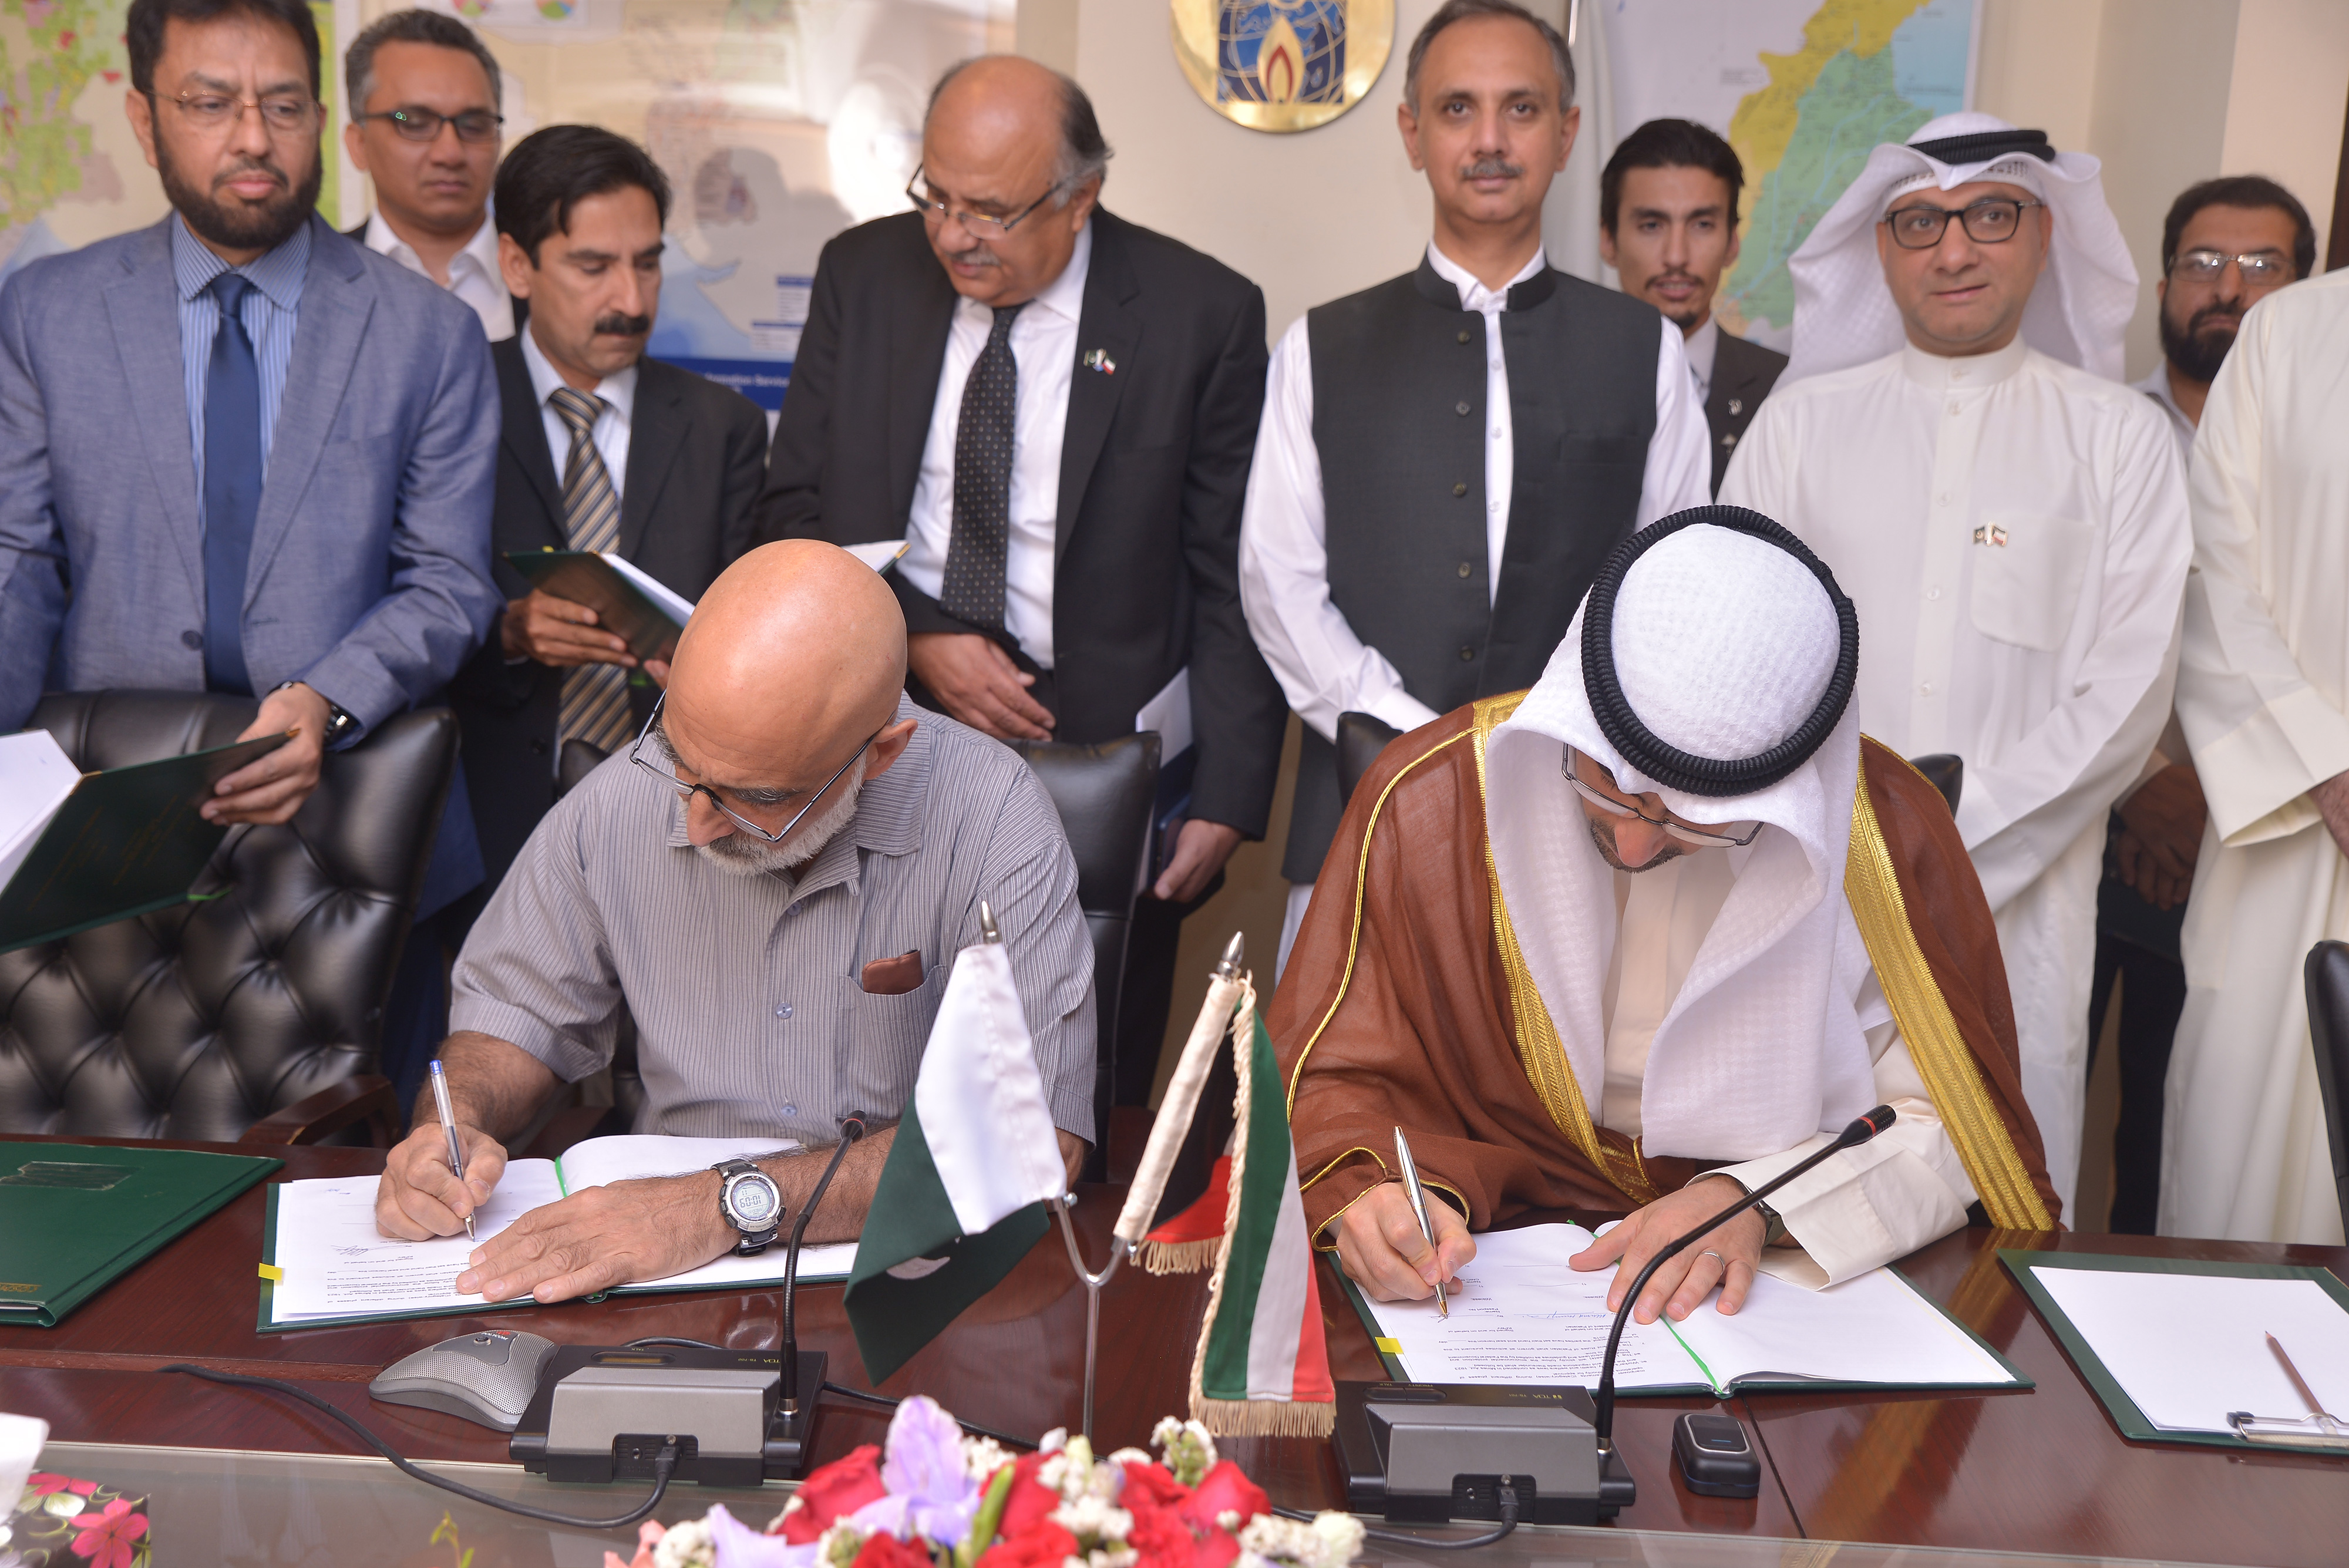 الرئيس التنفيذي ل(كوفبك) و السكرتير الفدرالي في القسم البترولي خلال توقيع الاتفاقية بحضور وزير النفط الفيدرالي في باكستان 